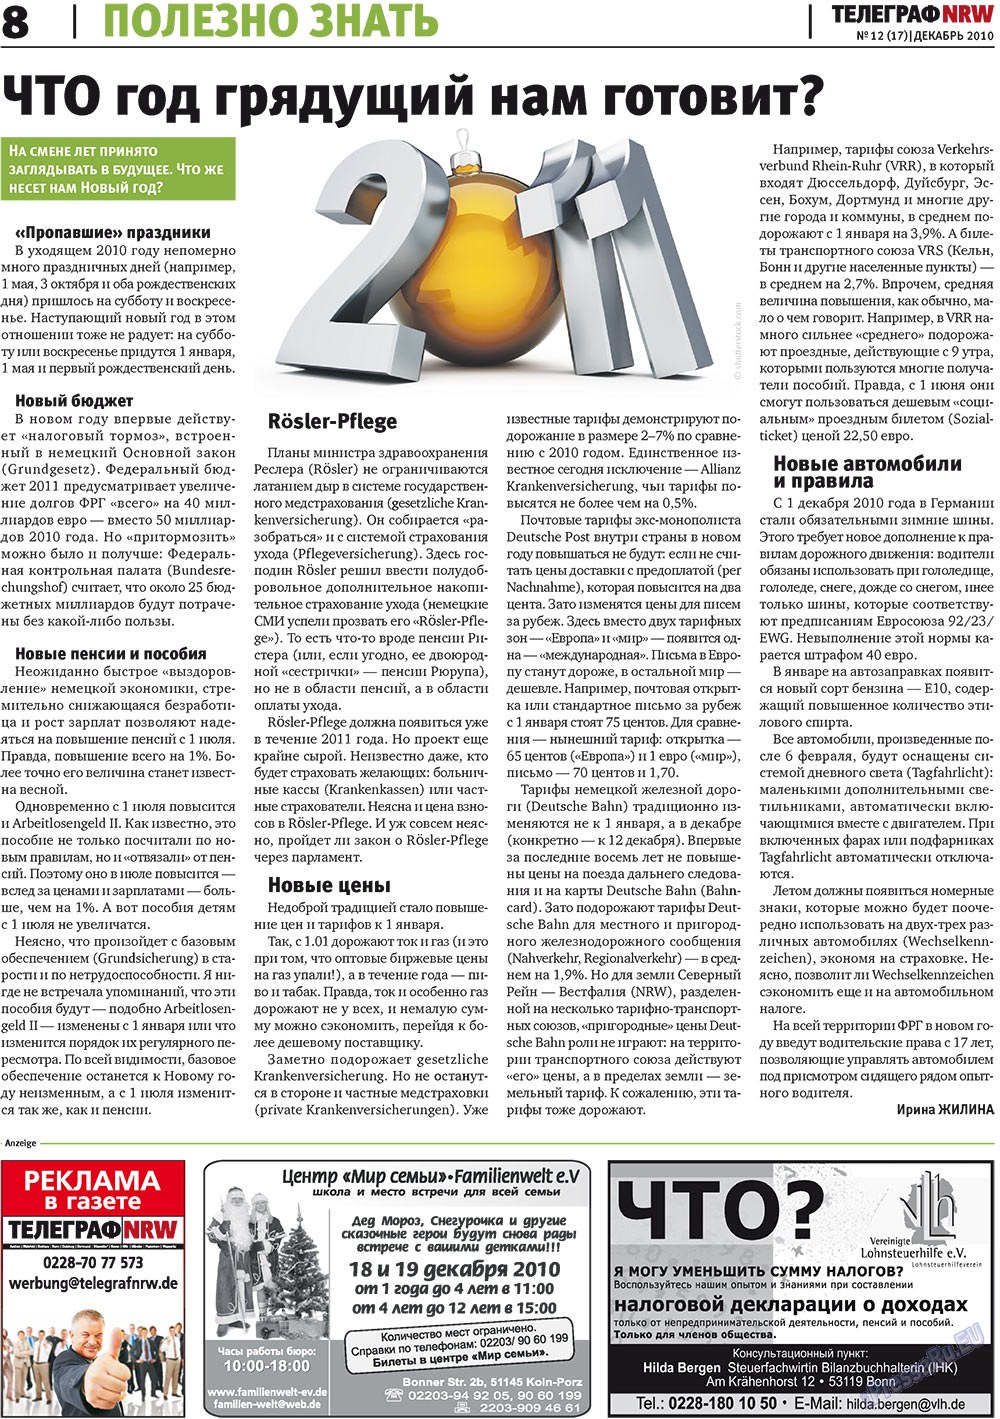 Телеграф NRW (газета). 2010 год, номер 12, стр. 8